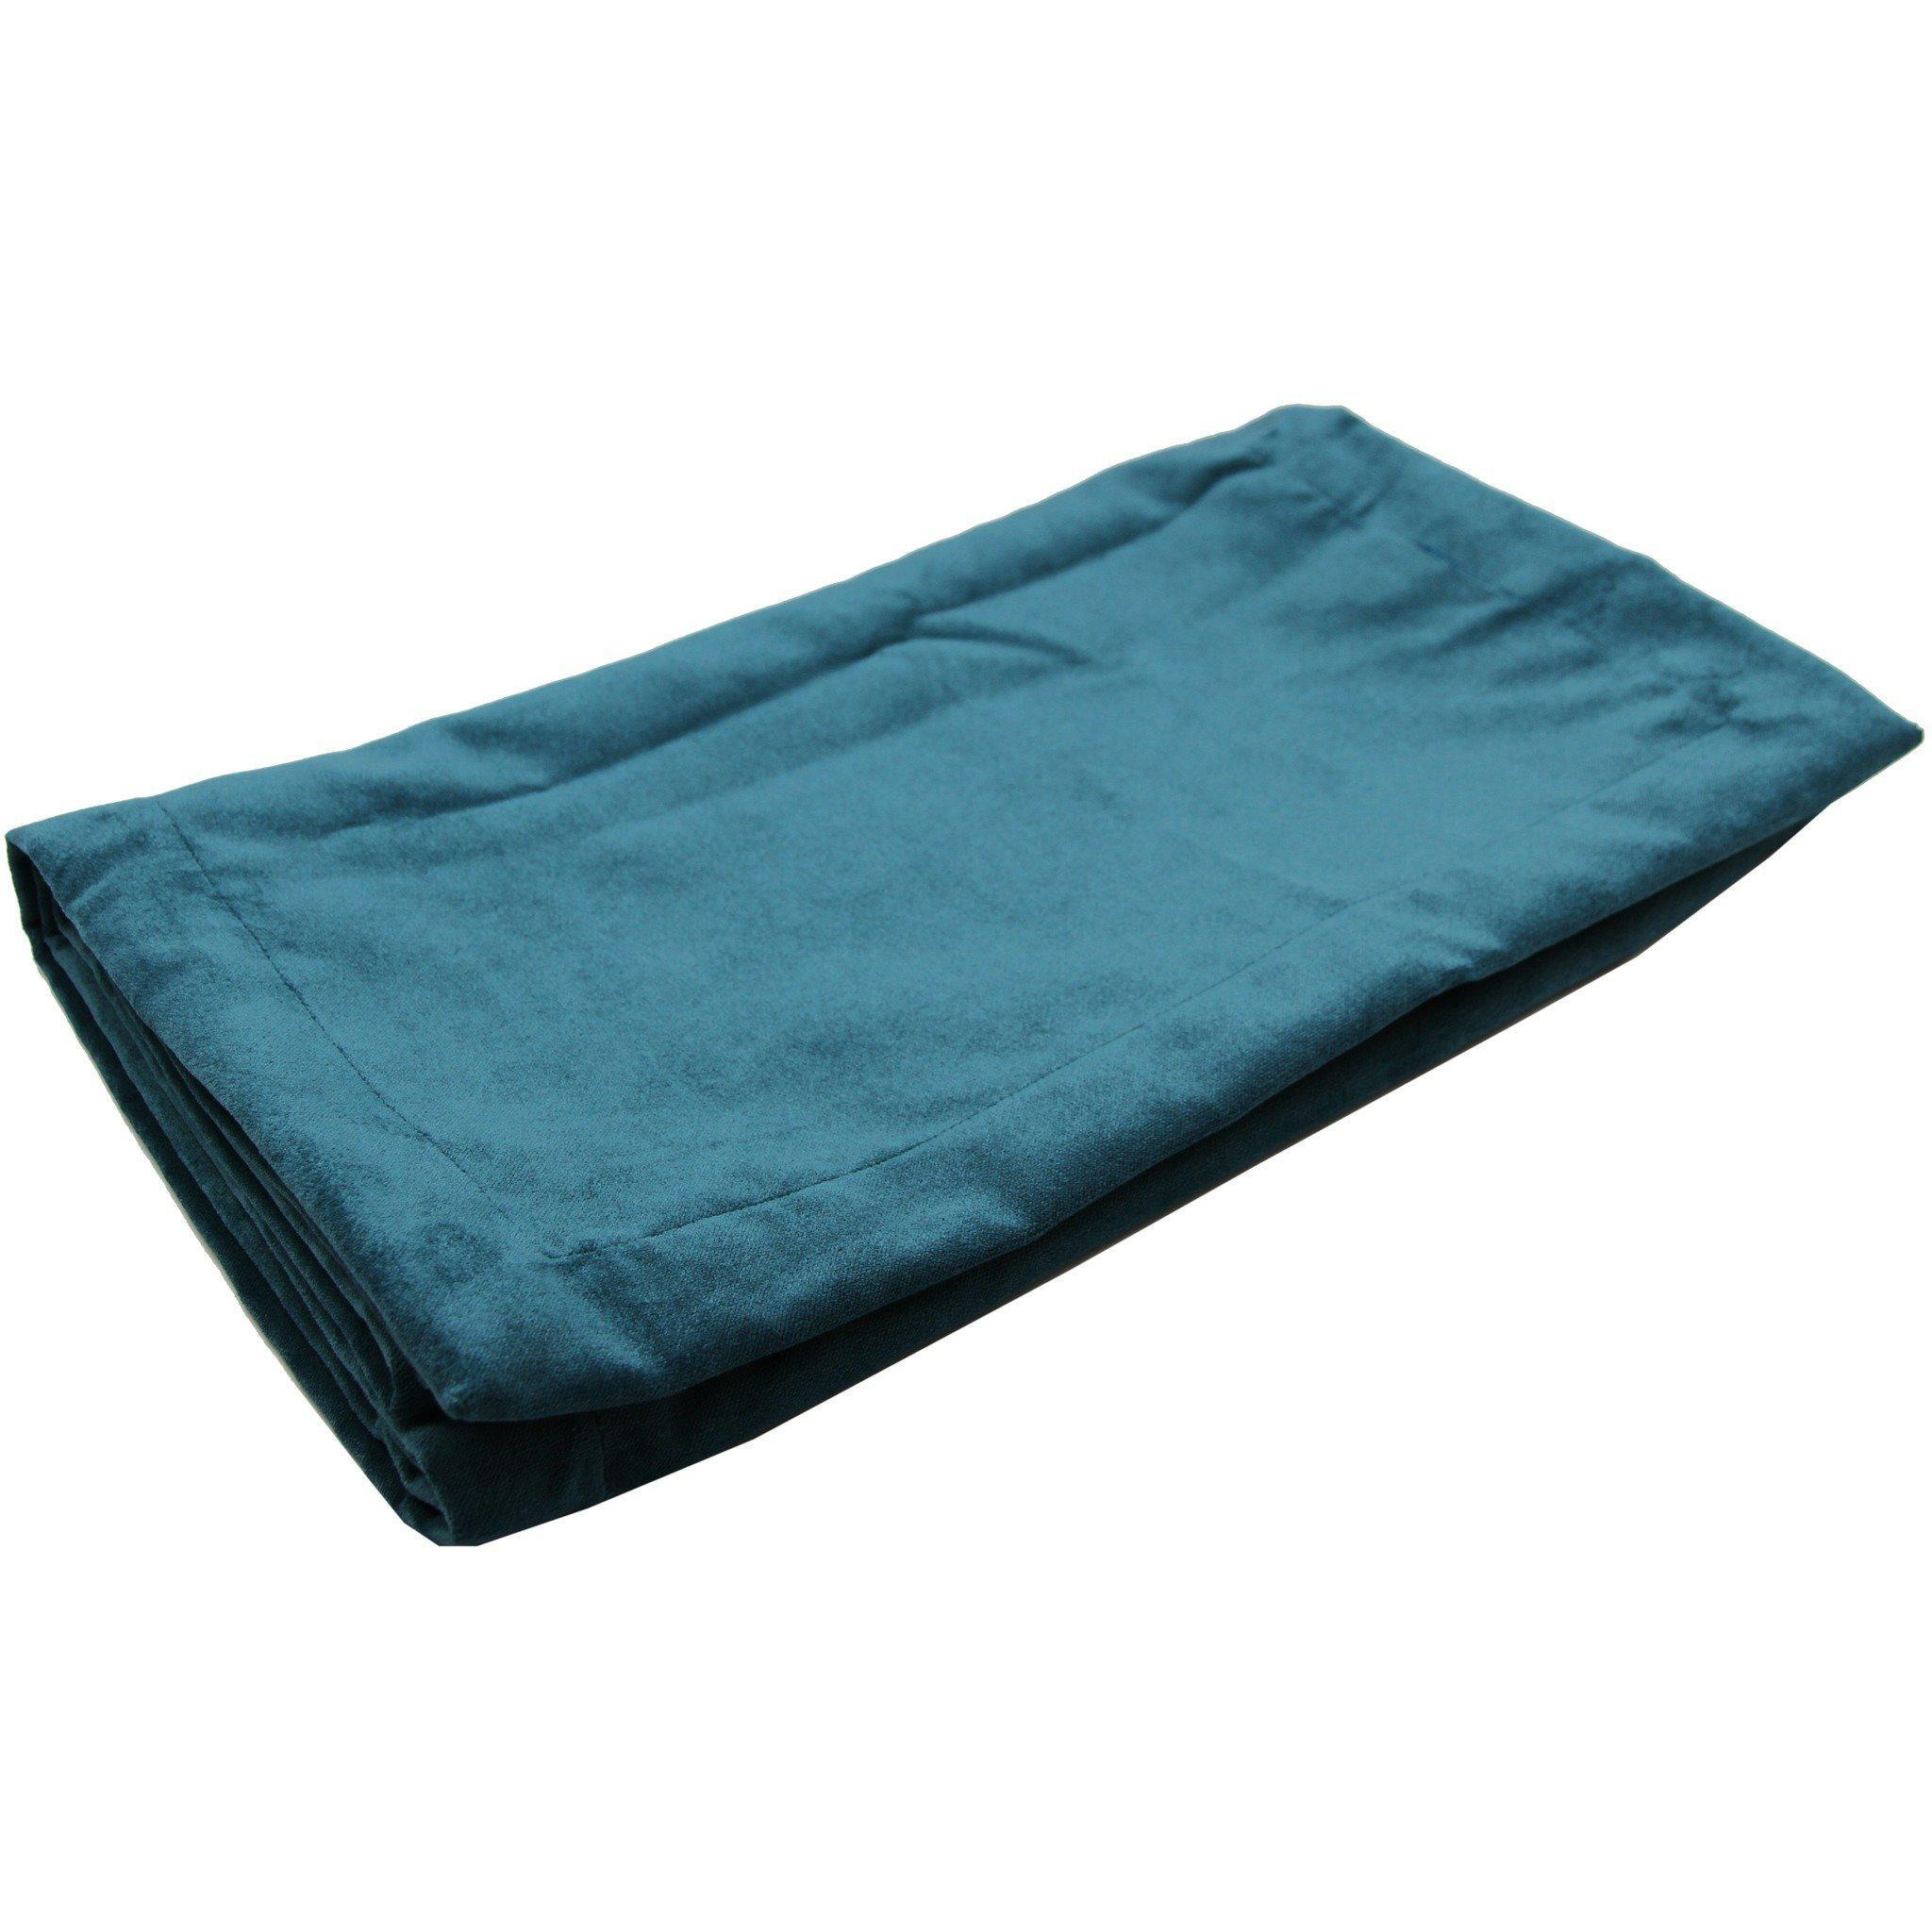 Matt Blue Teal Velvet Throw Blankets & Runners, Regular (130cm x 200cm)